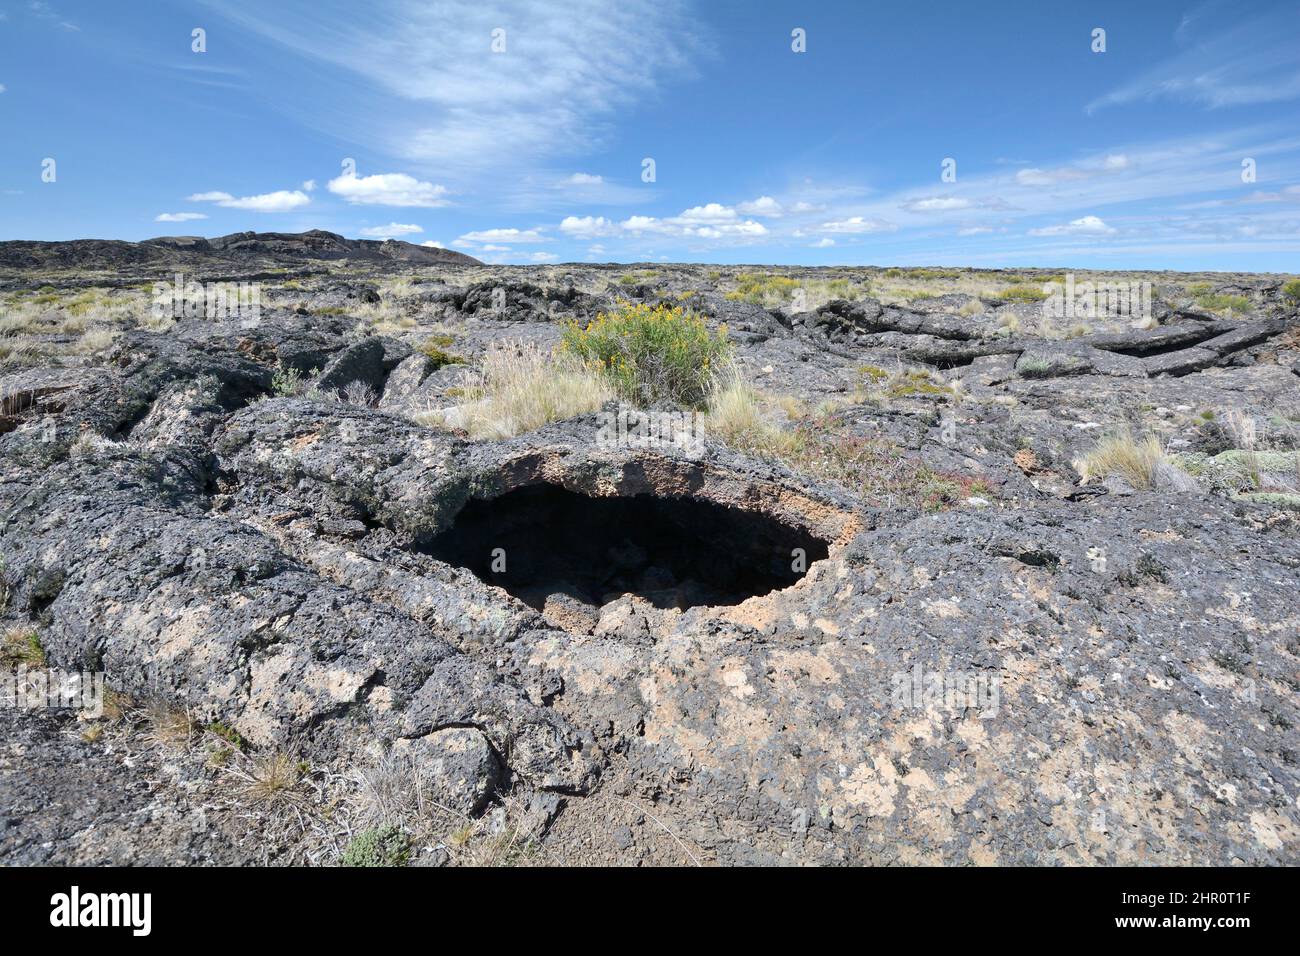 La lava antigua fluye desde el cráter Morada del Diablo, el Parque Nacional Pali Aike, la XII Región de Magallanes y la Antártida chilena, Chile Foto de stock